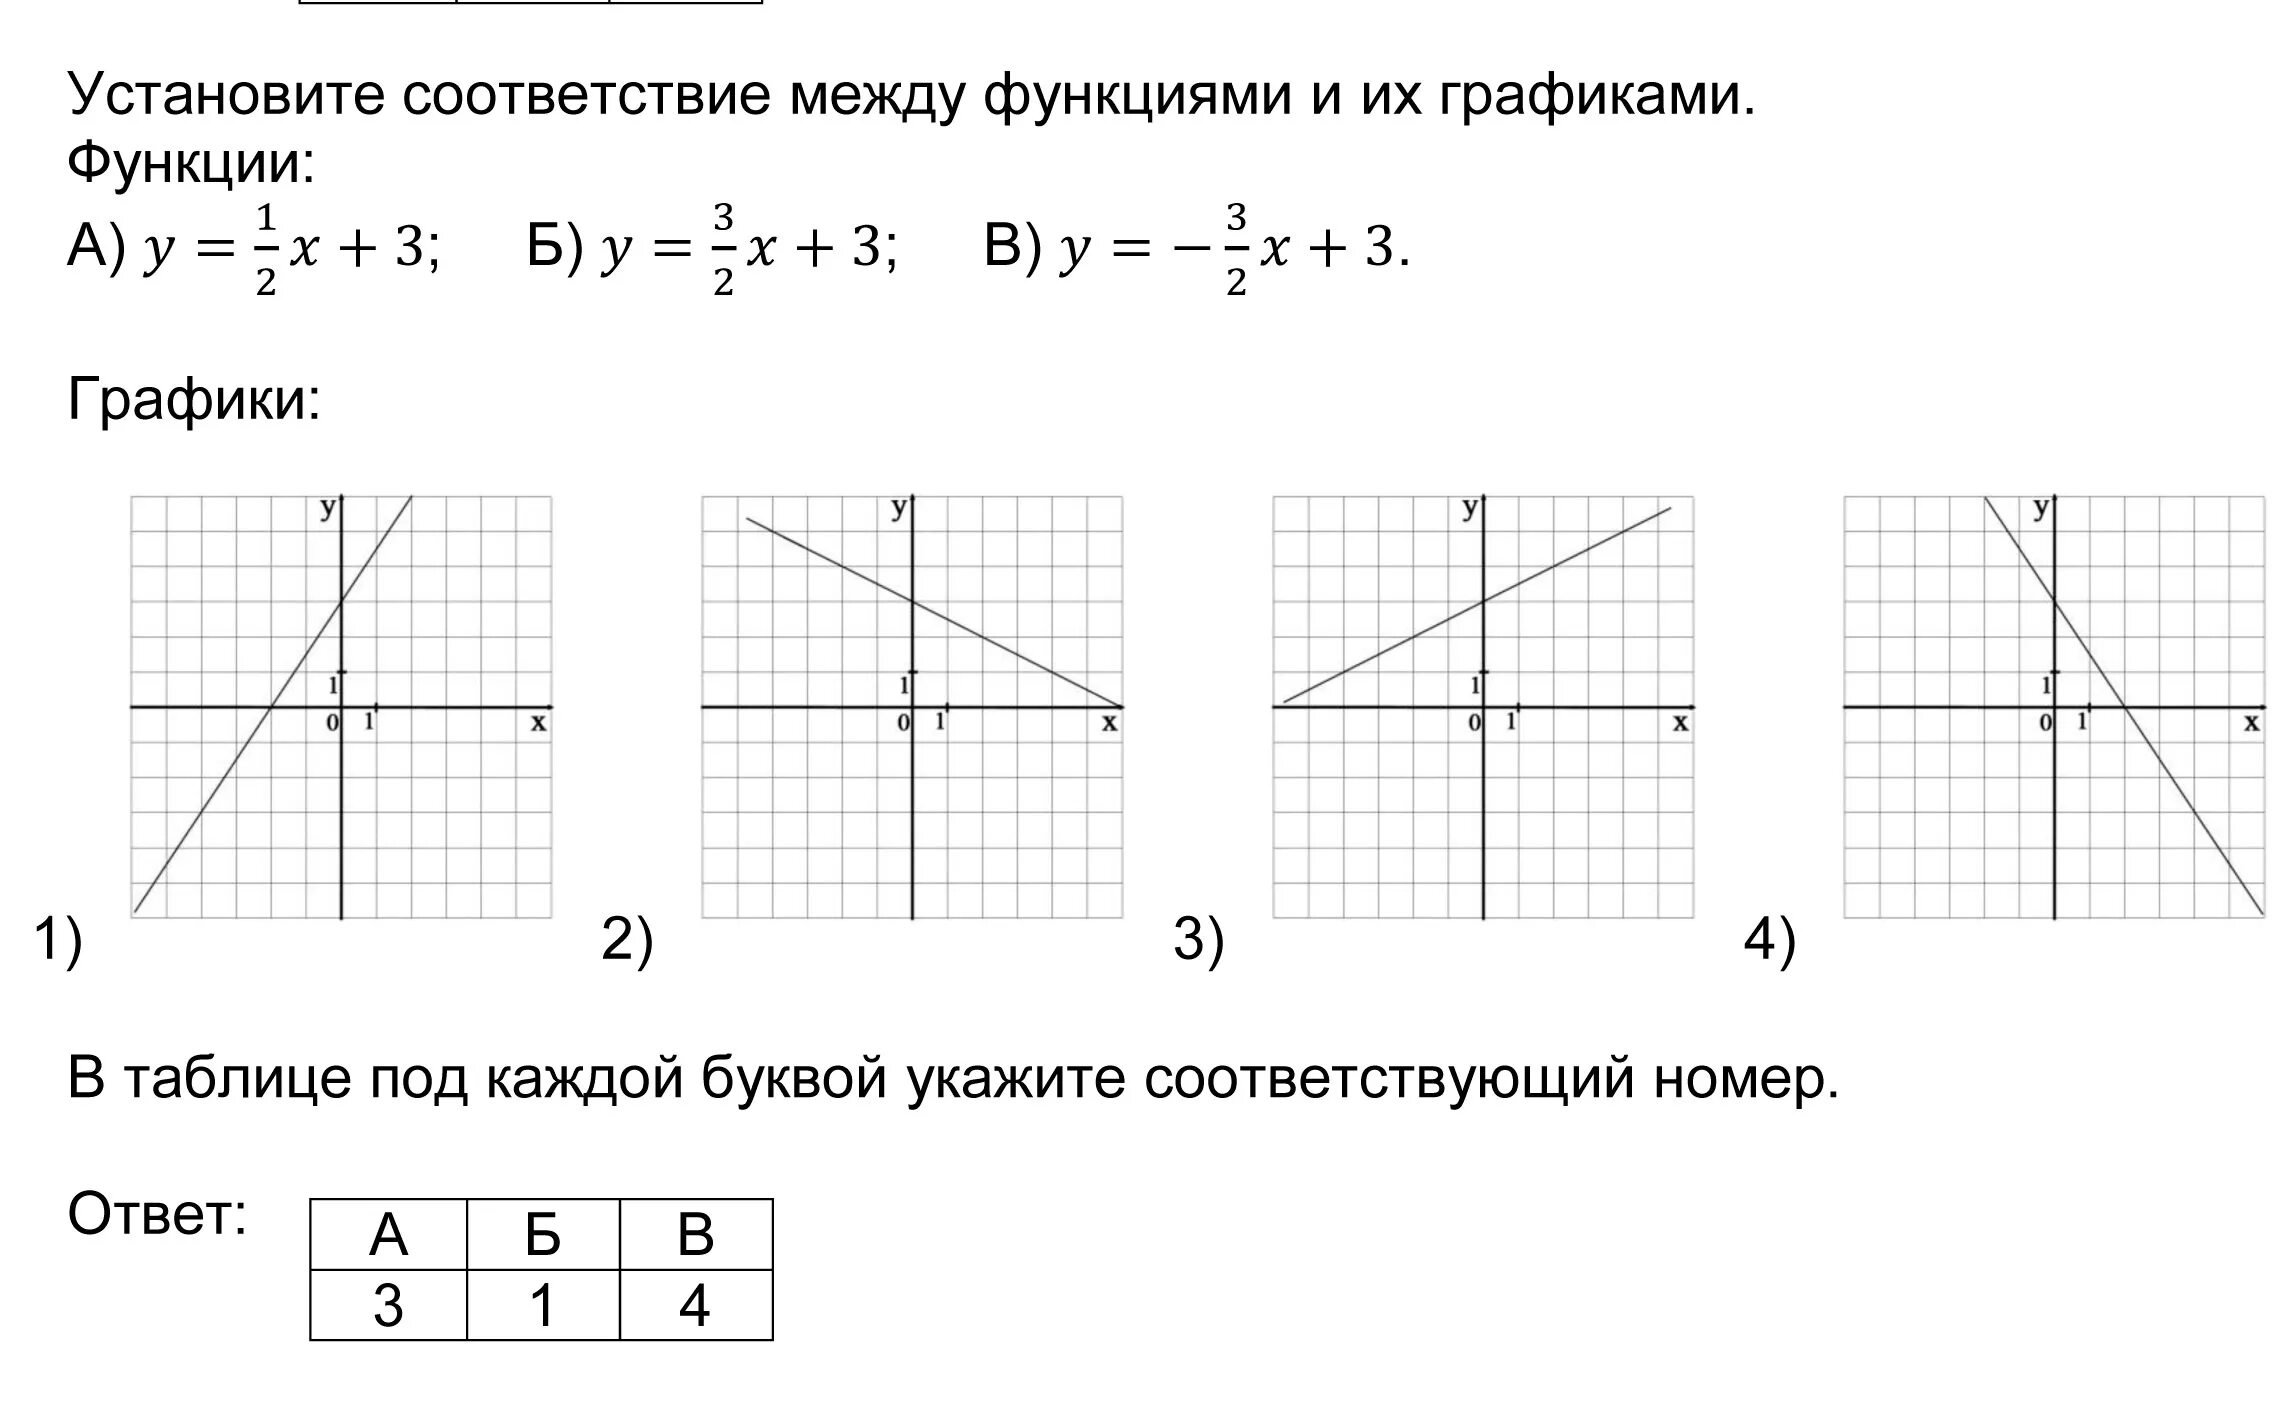 Установить соответствие между функцией и графиком y=-x+2. Установите соответствие между функциями и их графиками у 2 3х-5. Установите соответствие между функциями и их графиками функции. Установите соответствие между функциями и их графиками y x2-2x y x2+2x. Установите соответствие у 1 2х 3